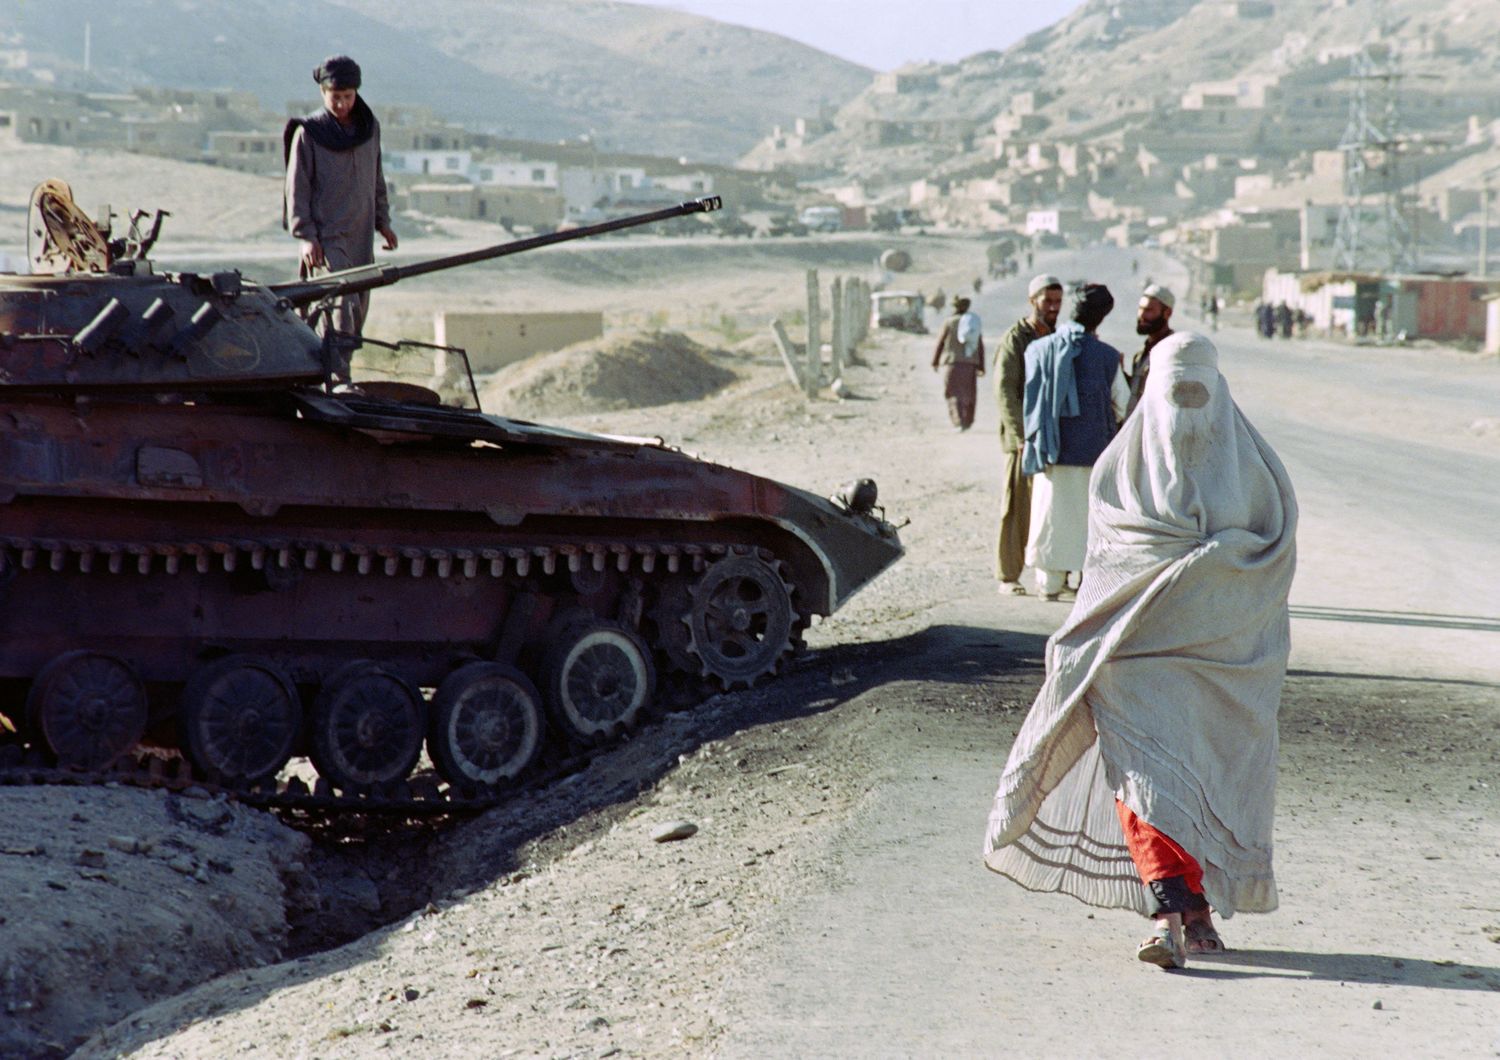 afghanistan governo talebani